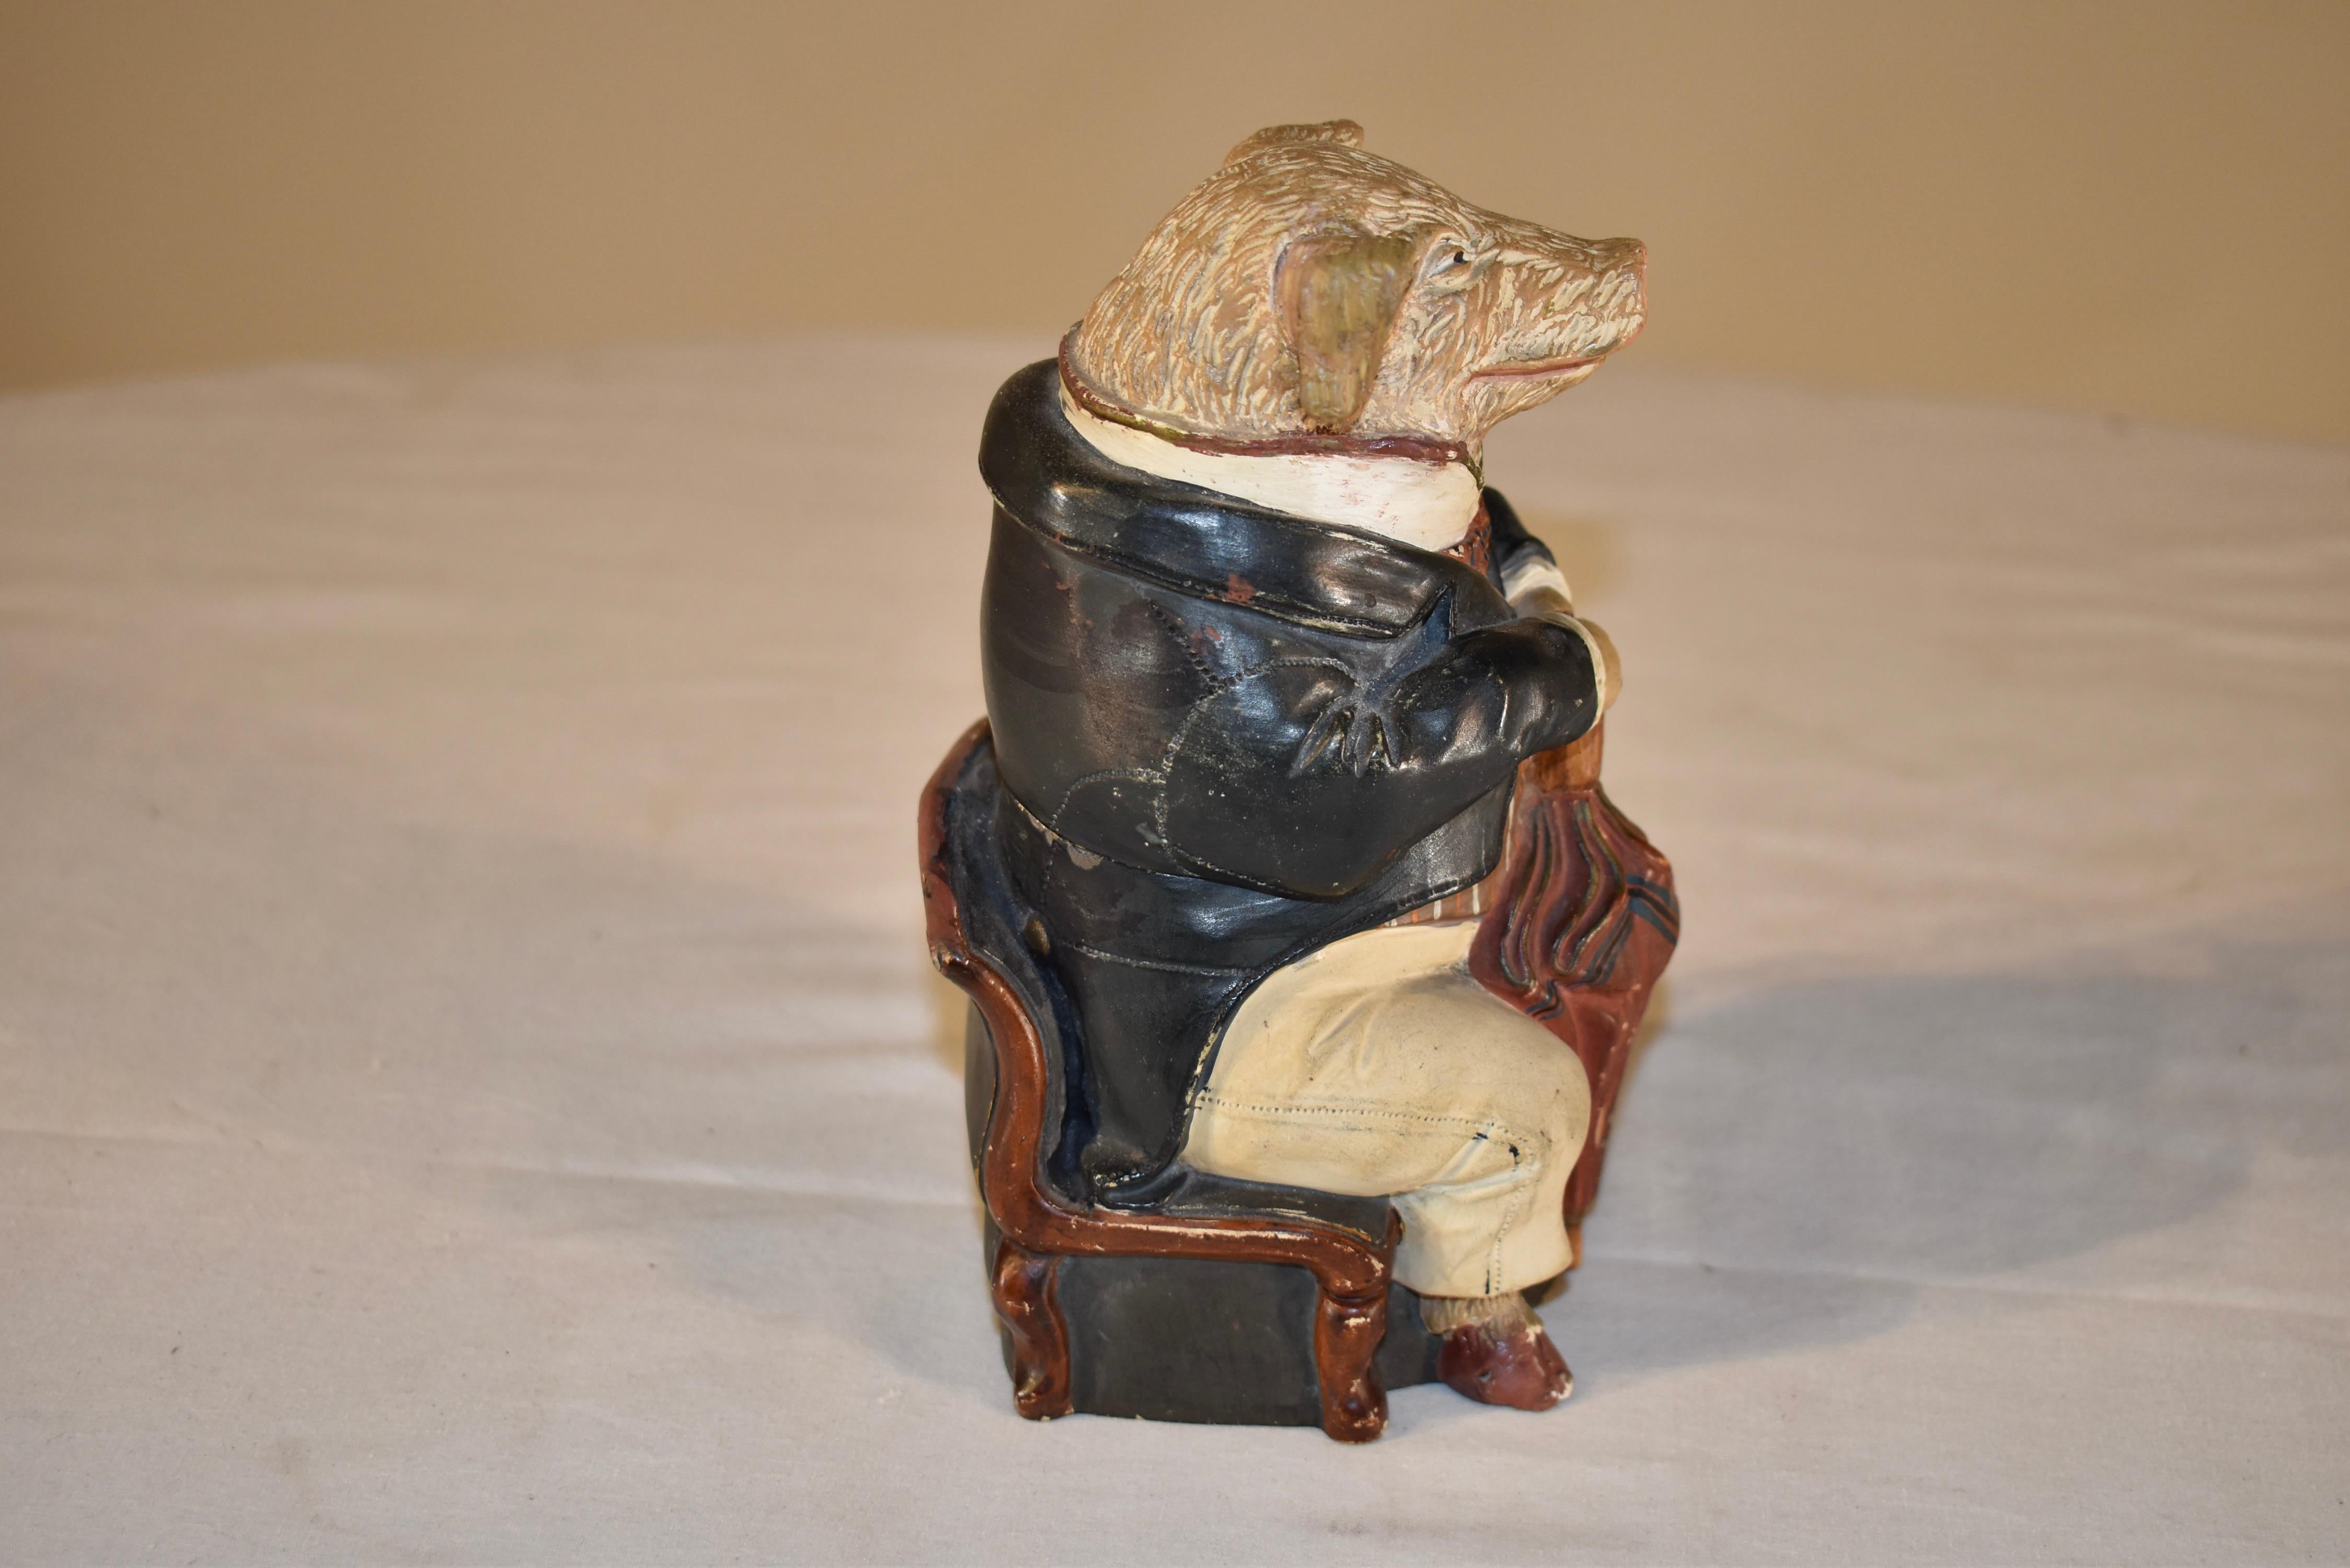 Seltene signierte Johann Maresh-Tabakdose aus dem 19. Jahrhundert in Form eines Herrenschweins. Dies ist eine dieser wunderbaren Tabakdosen, die Sie sich als Star Ihrer Sammlung wünschen. Er ist so skurril, wie er da mit seinem Regenschirm sitzt! 